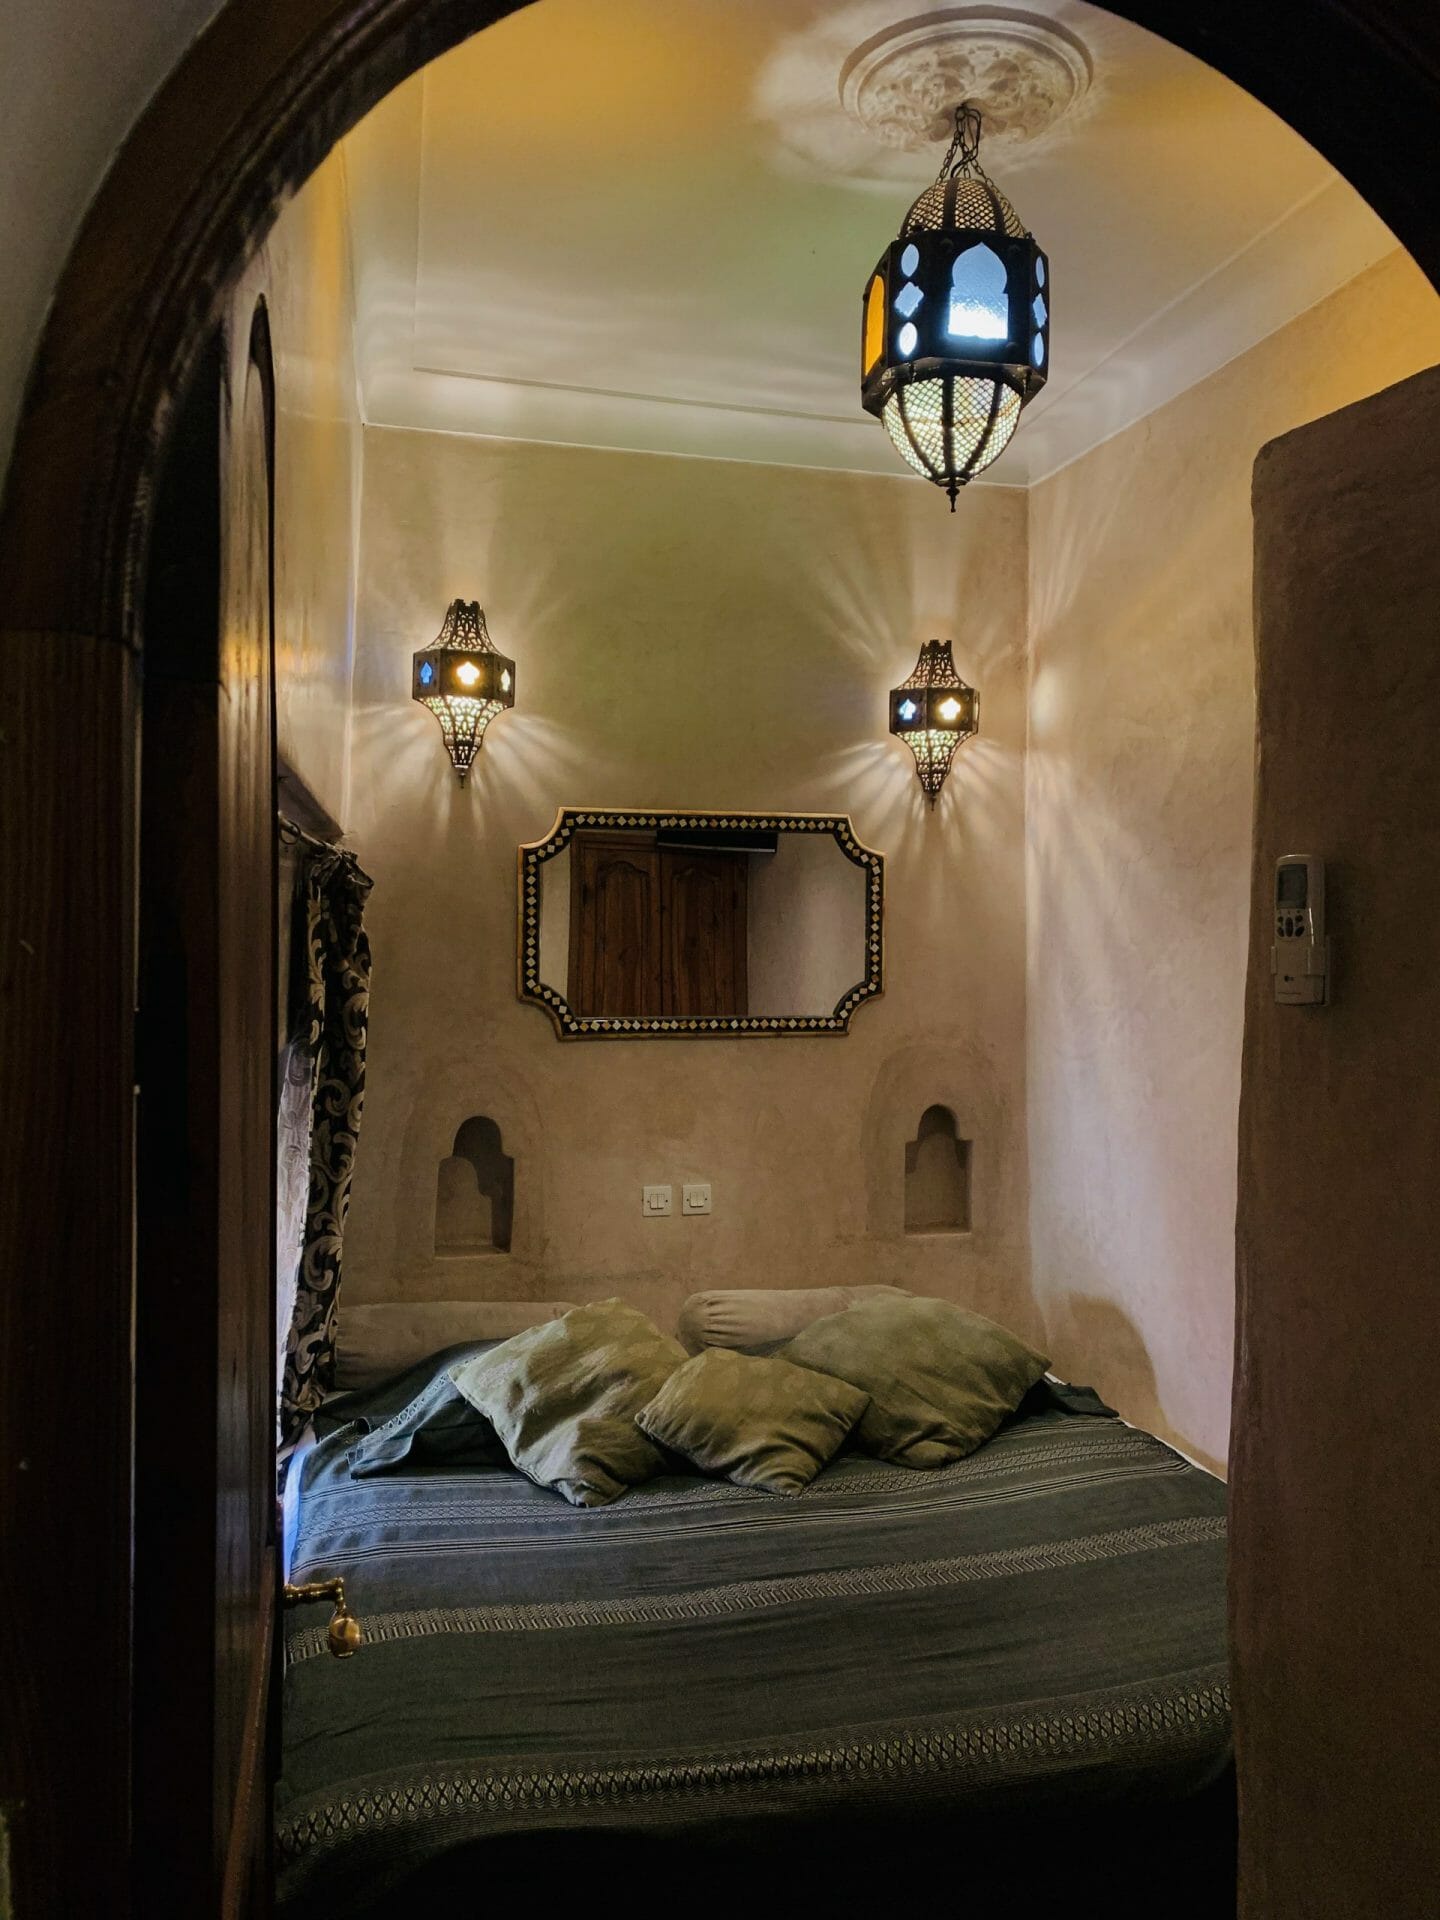 Riad Hotel Zimmer mit marokkanischer dekoration